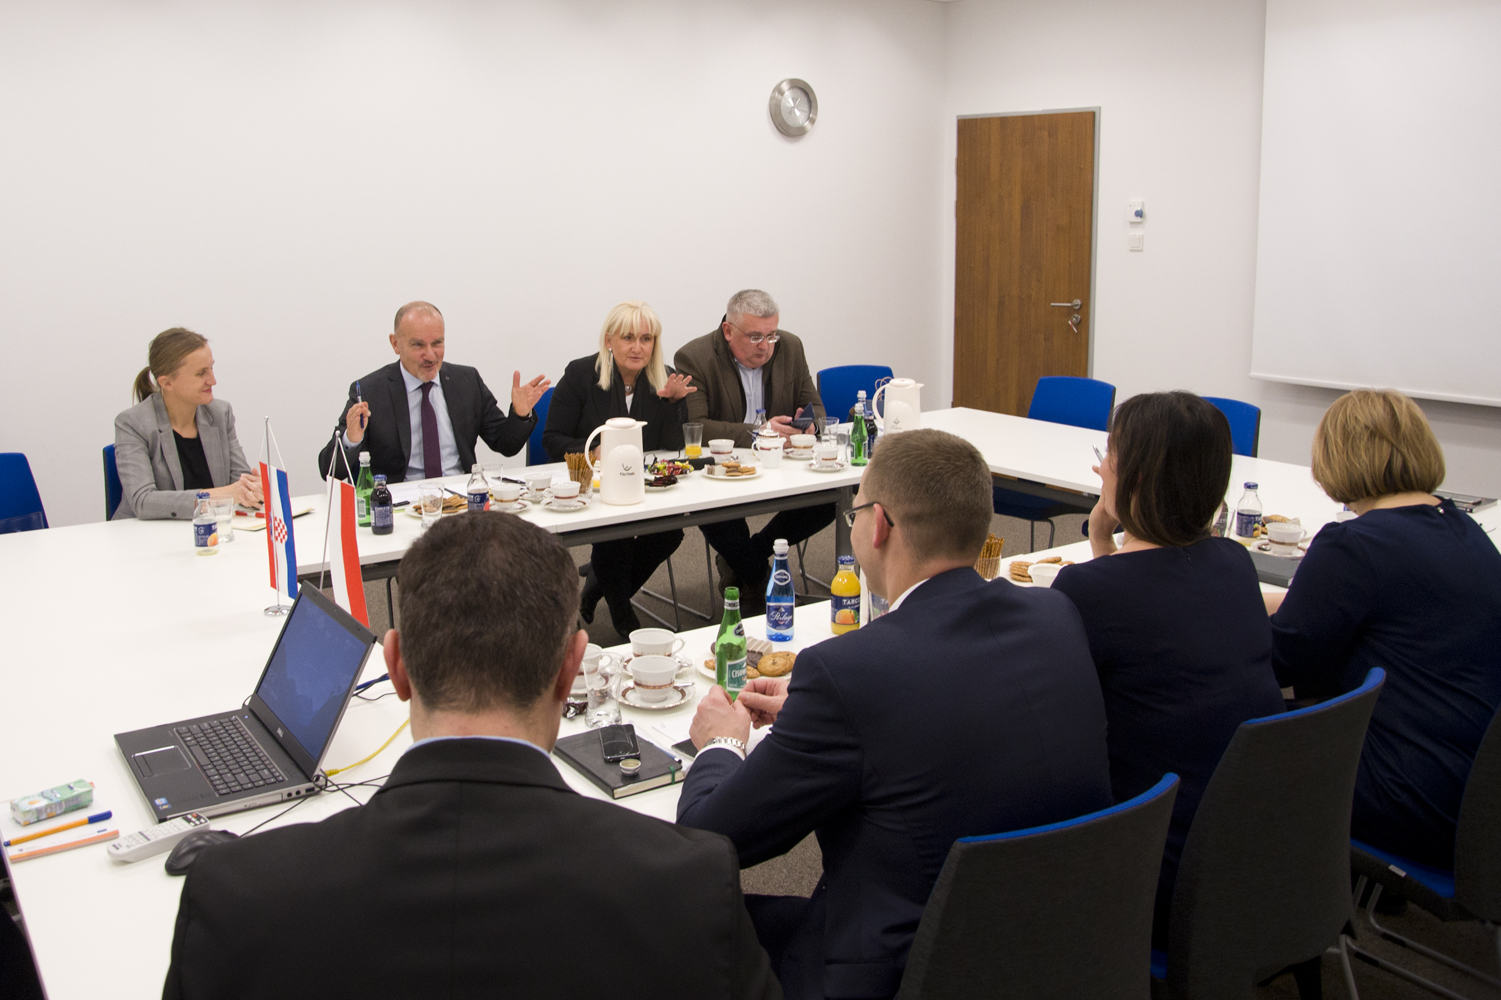 wizyta przedstawicieli chorwackiej Państwowej komisji nadzoru zamówień publicznych